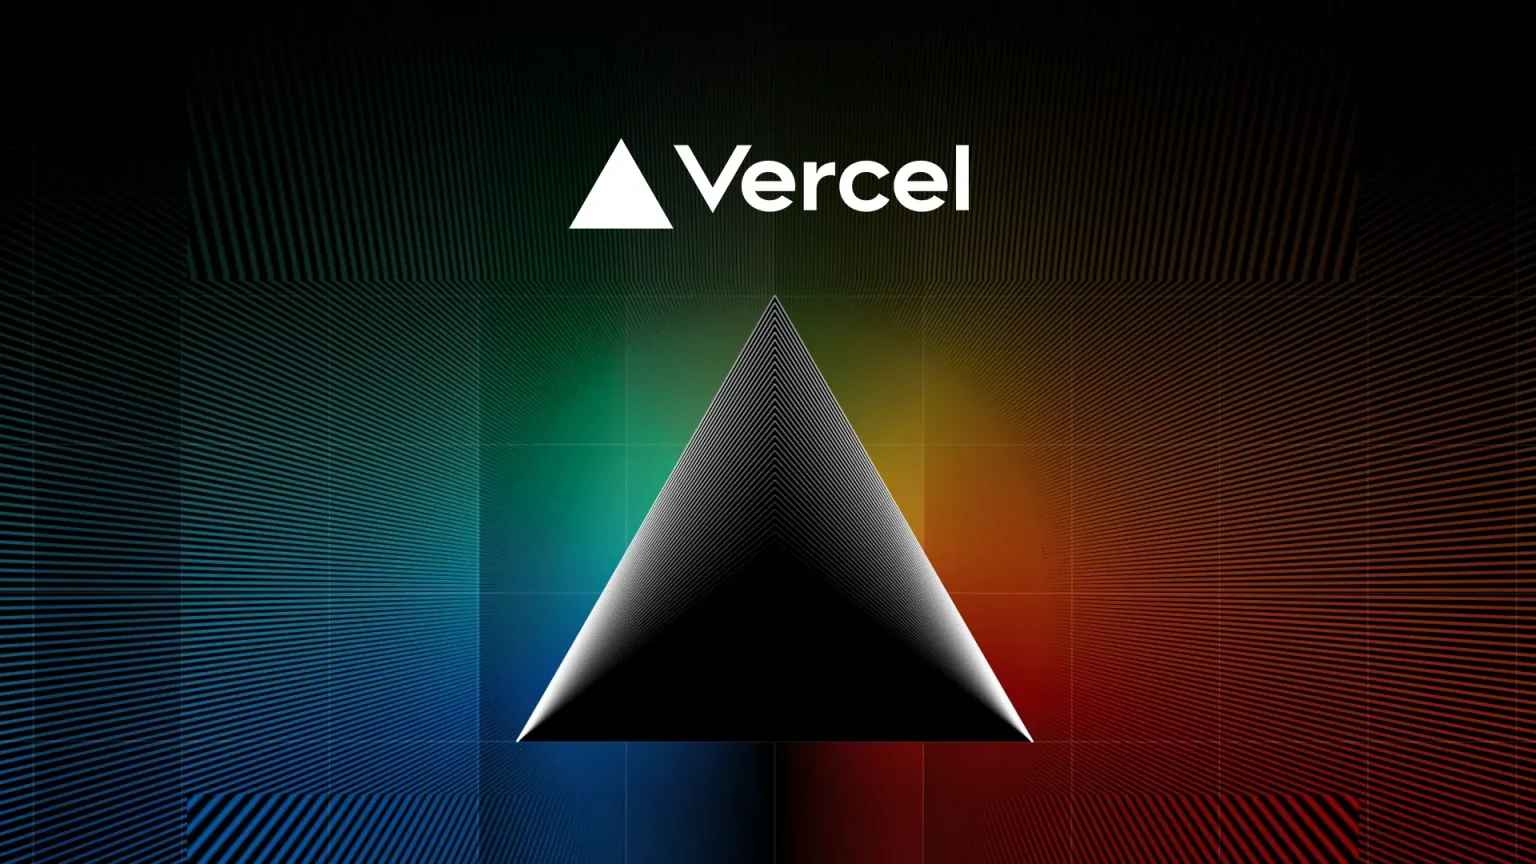 Next.js'in geliştiricisi Vercel, 3.2 milyar dolar değerlemeyle 250 milyon dolar yatırım aldı